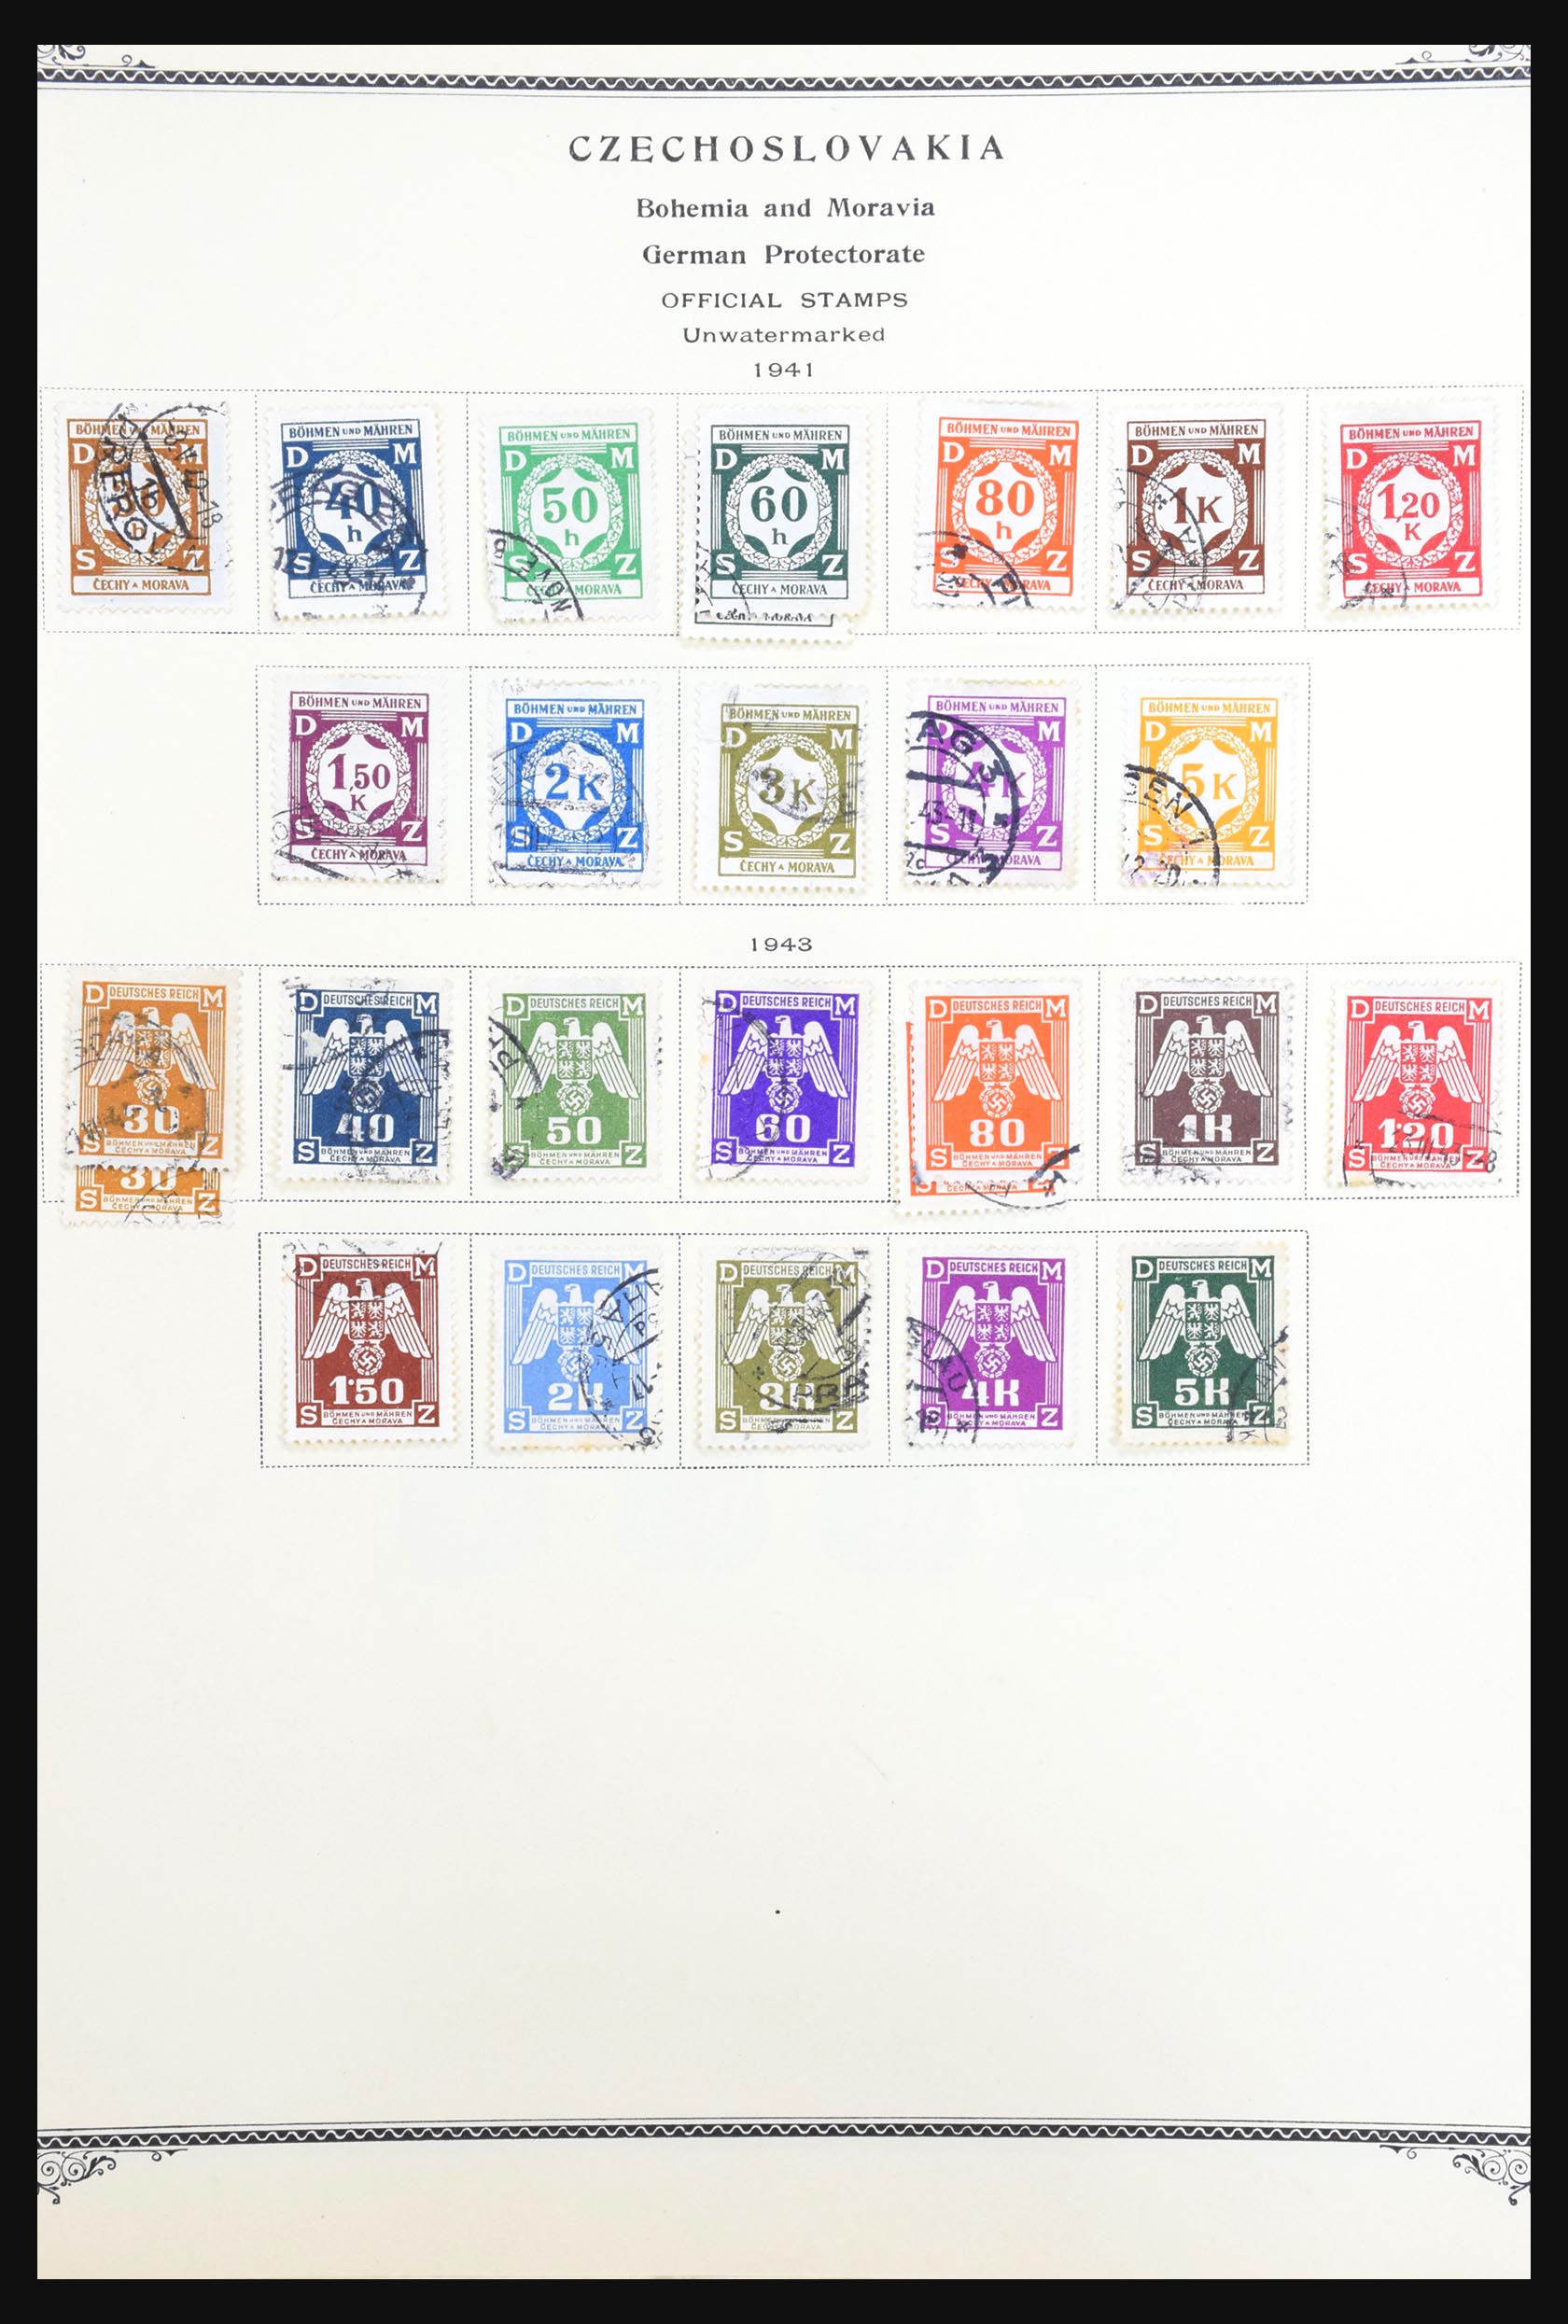 31300 042 - 31300 Duitsland superverzameling 1849-1990.